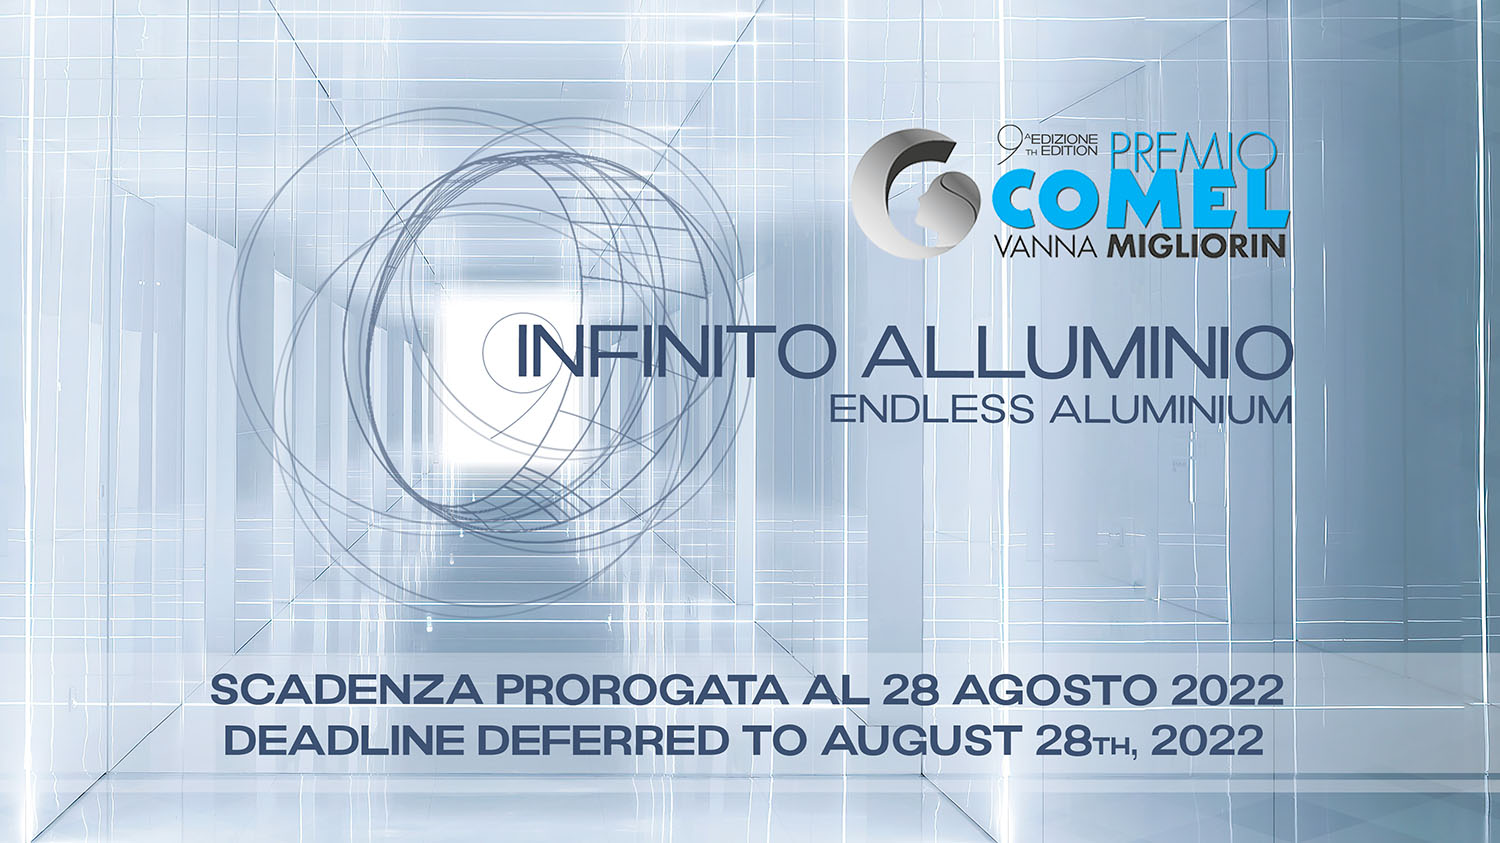 Premio COMEL Vanna Migliorin Arte Contemporanea - “Infinito Alluminio”